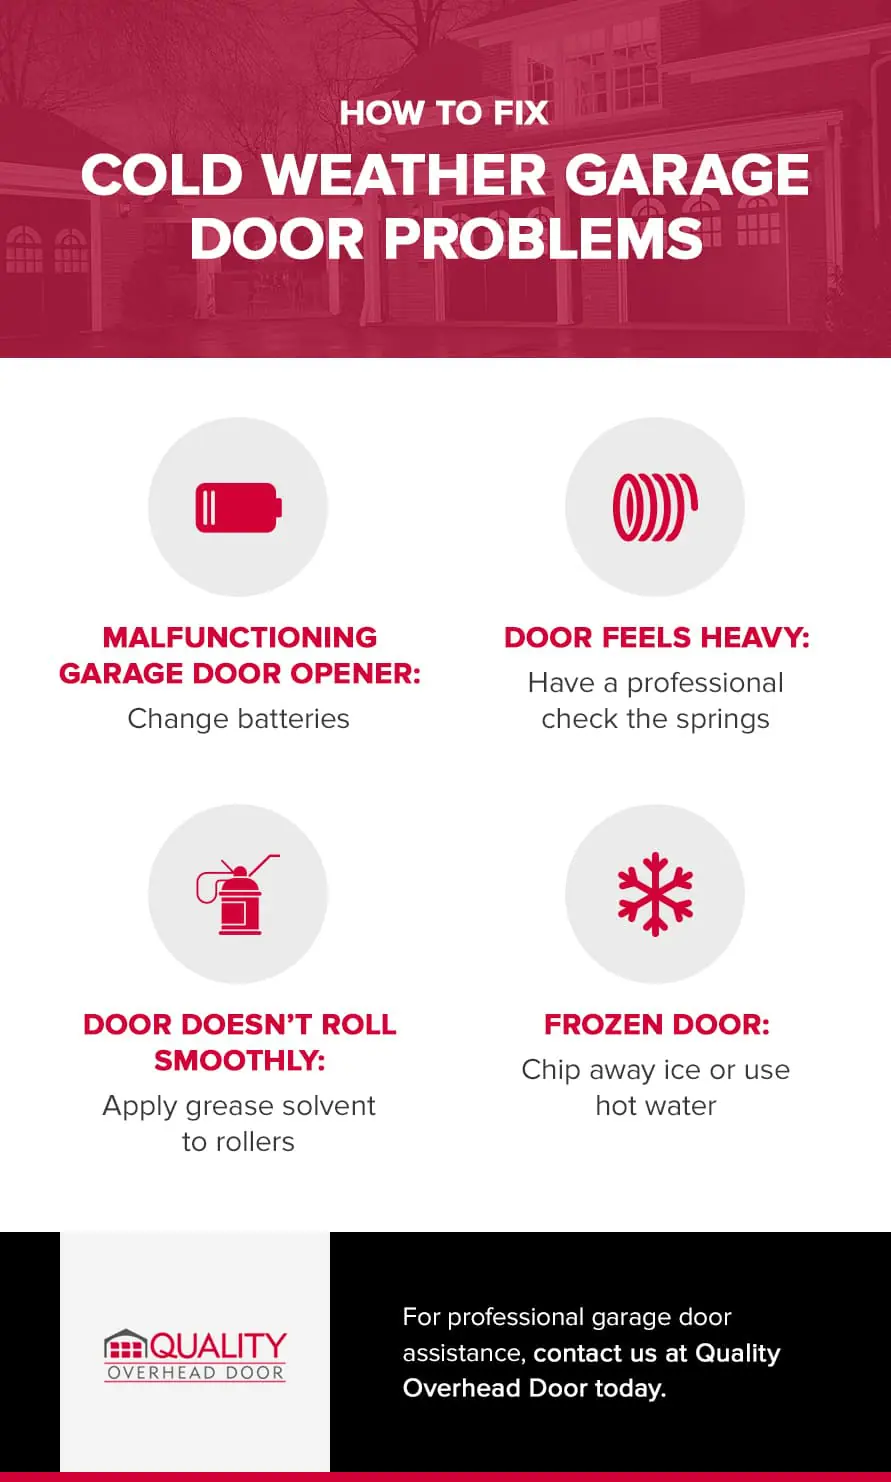 How to Fix Cold Weather Garage Door Problems | Quality Overhead Door